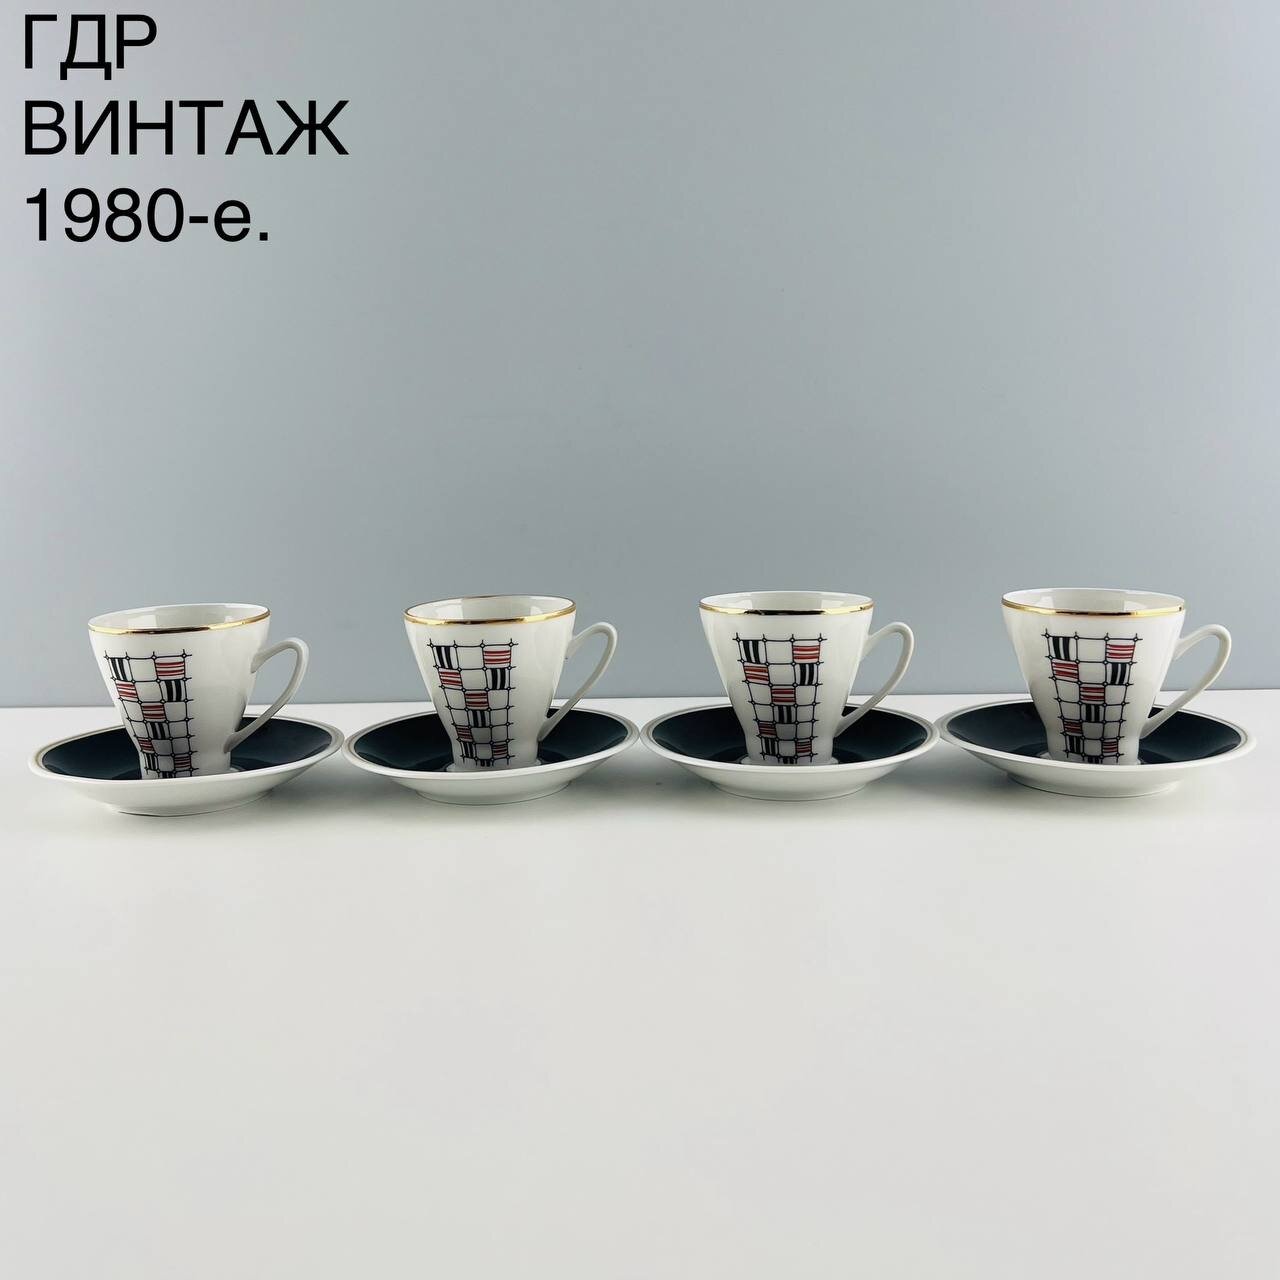 Винтажный набор кофейных пар "Полосы 2" в стиле минимализм. Фарфор Freiberger. ГДР, 1980-е.